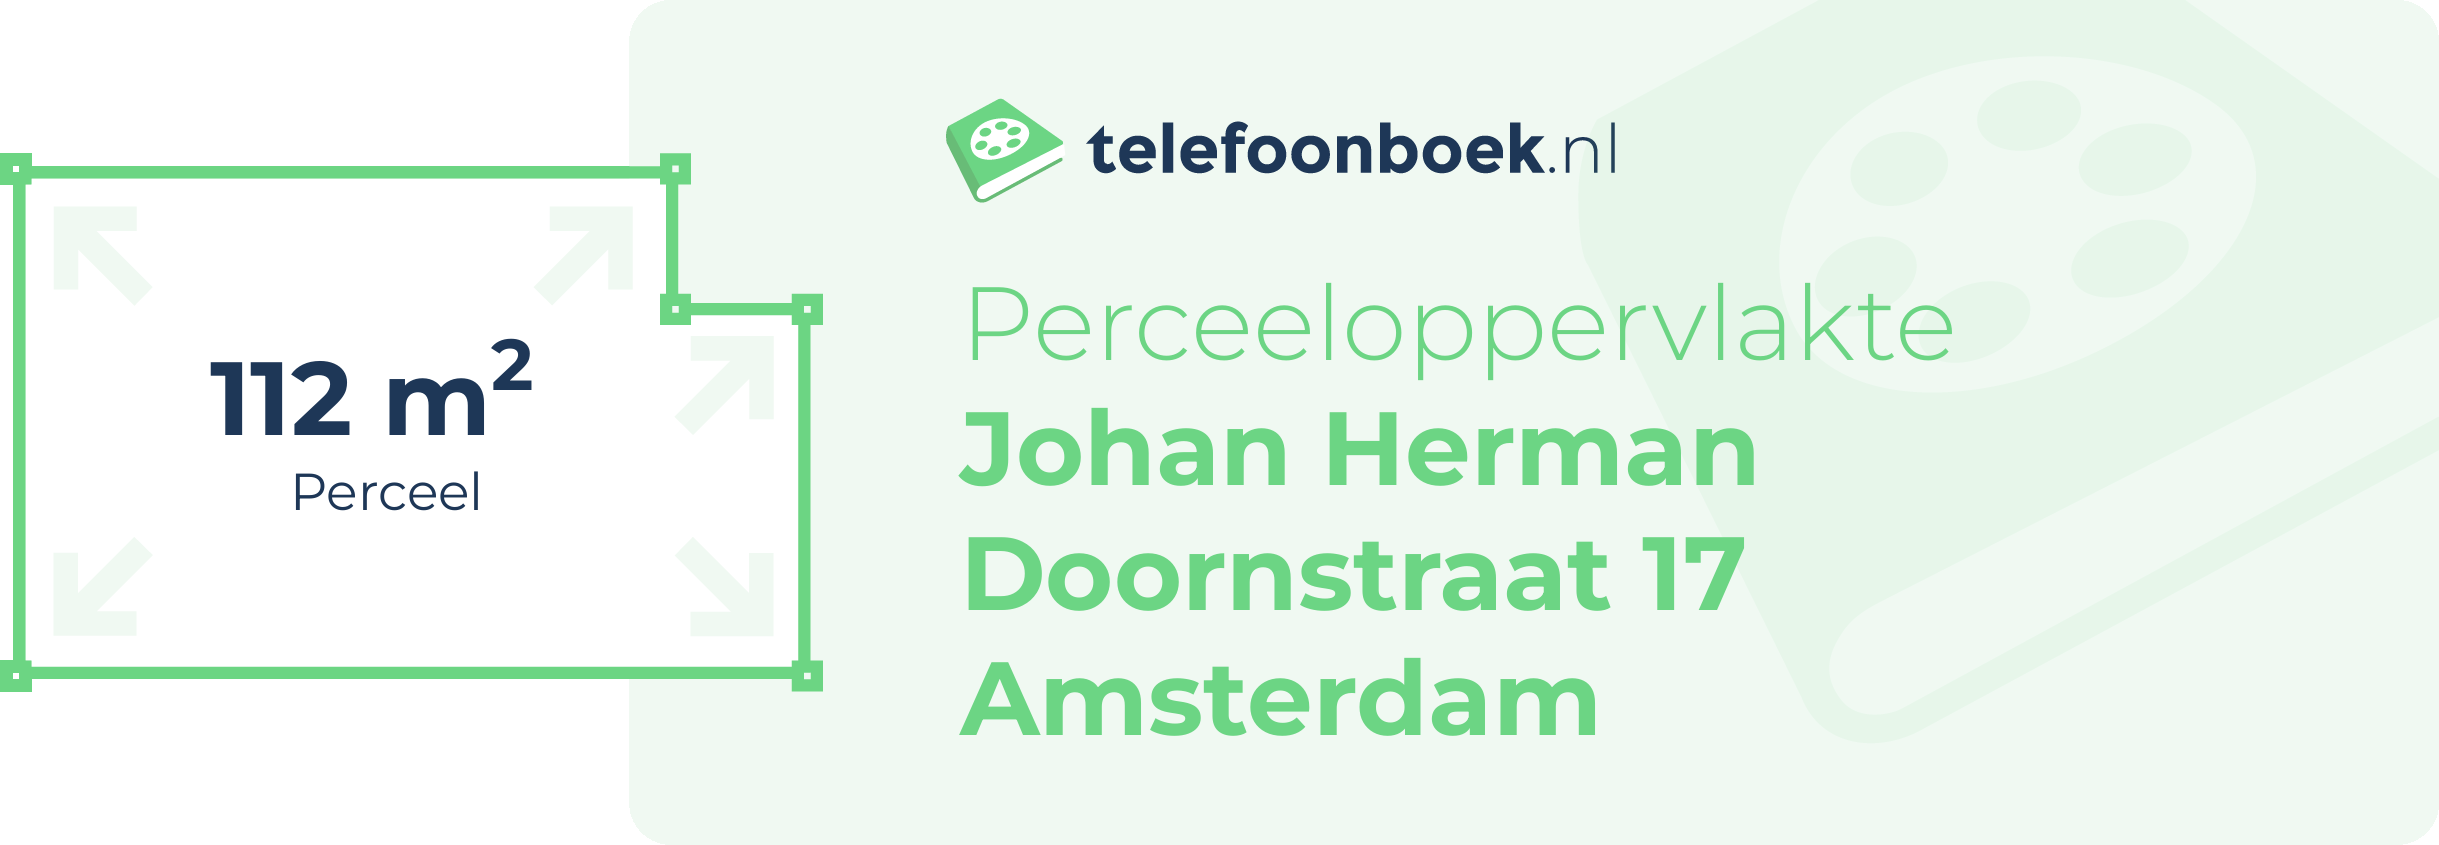 Perceeloppervlakte Johan Herman Doornstraat 17 Amsterdam